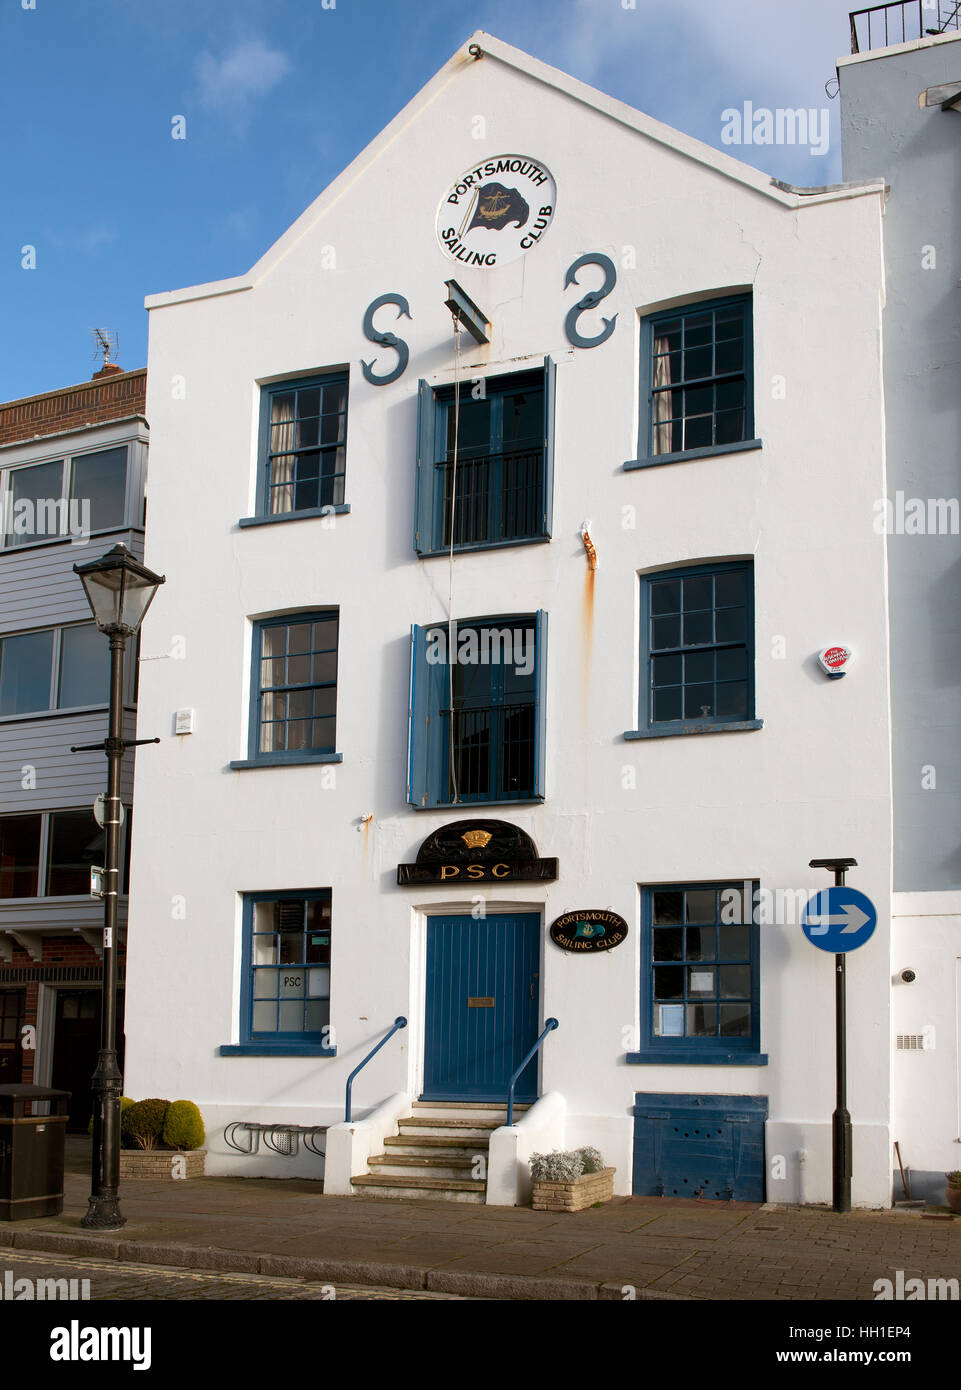 L'ancien Consulat, 21 Baignoire Square, House, Portsmouth, accueil du Club de voile de Portsmouth, Hampshire, England, UK. Banque D'Images